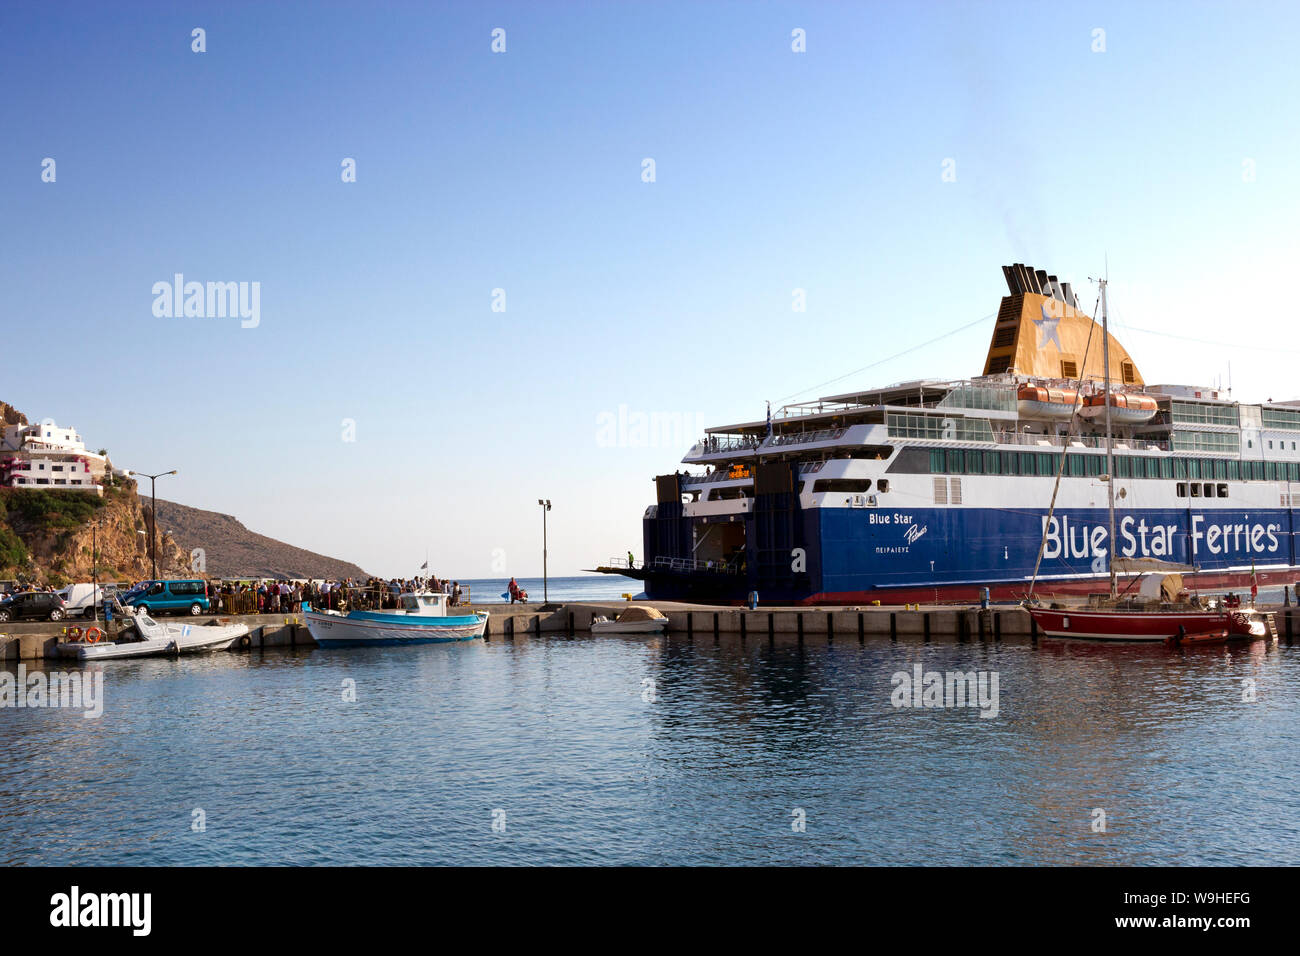 Tilos Island, Griechenland - 23. September 2018. Passagiere warten die Fähre Blue Star Ferries auf dem Weg in den Hafen von Livadi. Tilos liegt auf halbem Weg zwischen Kos und Stockfoto